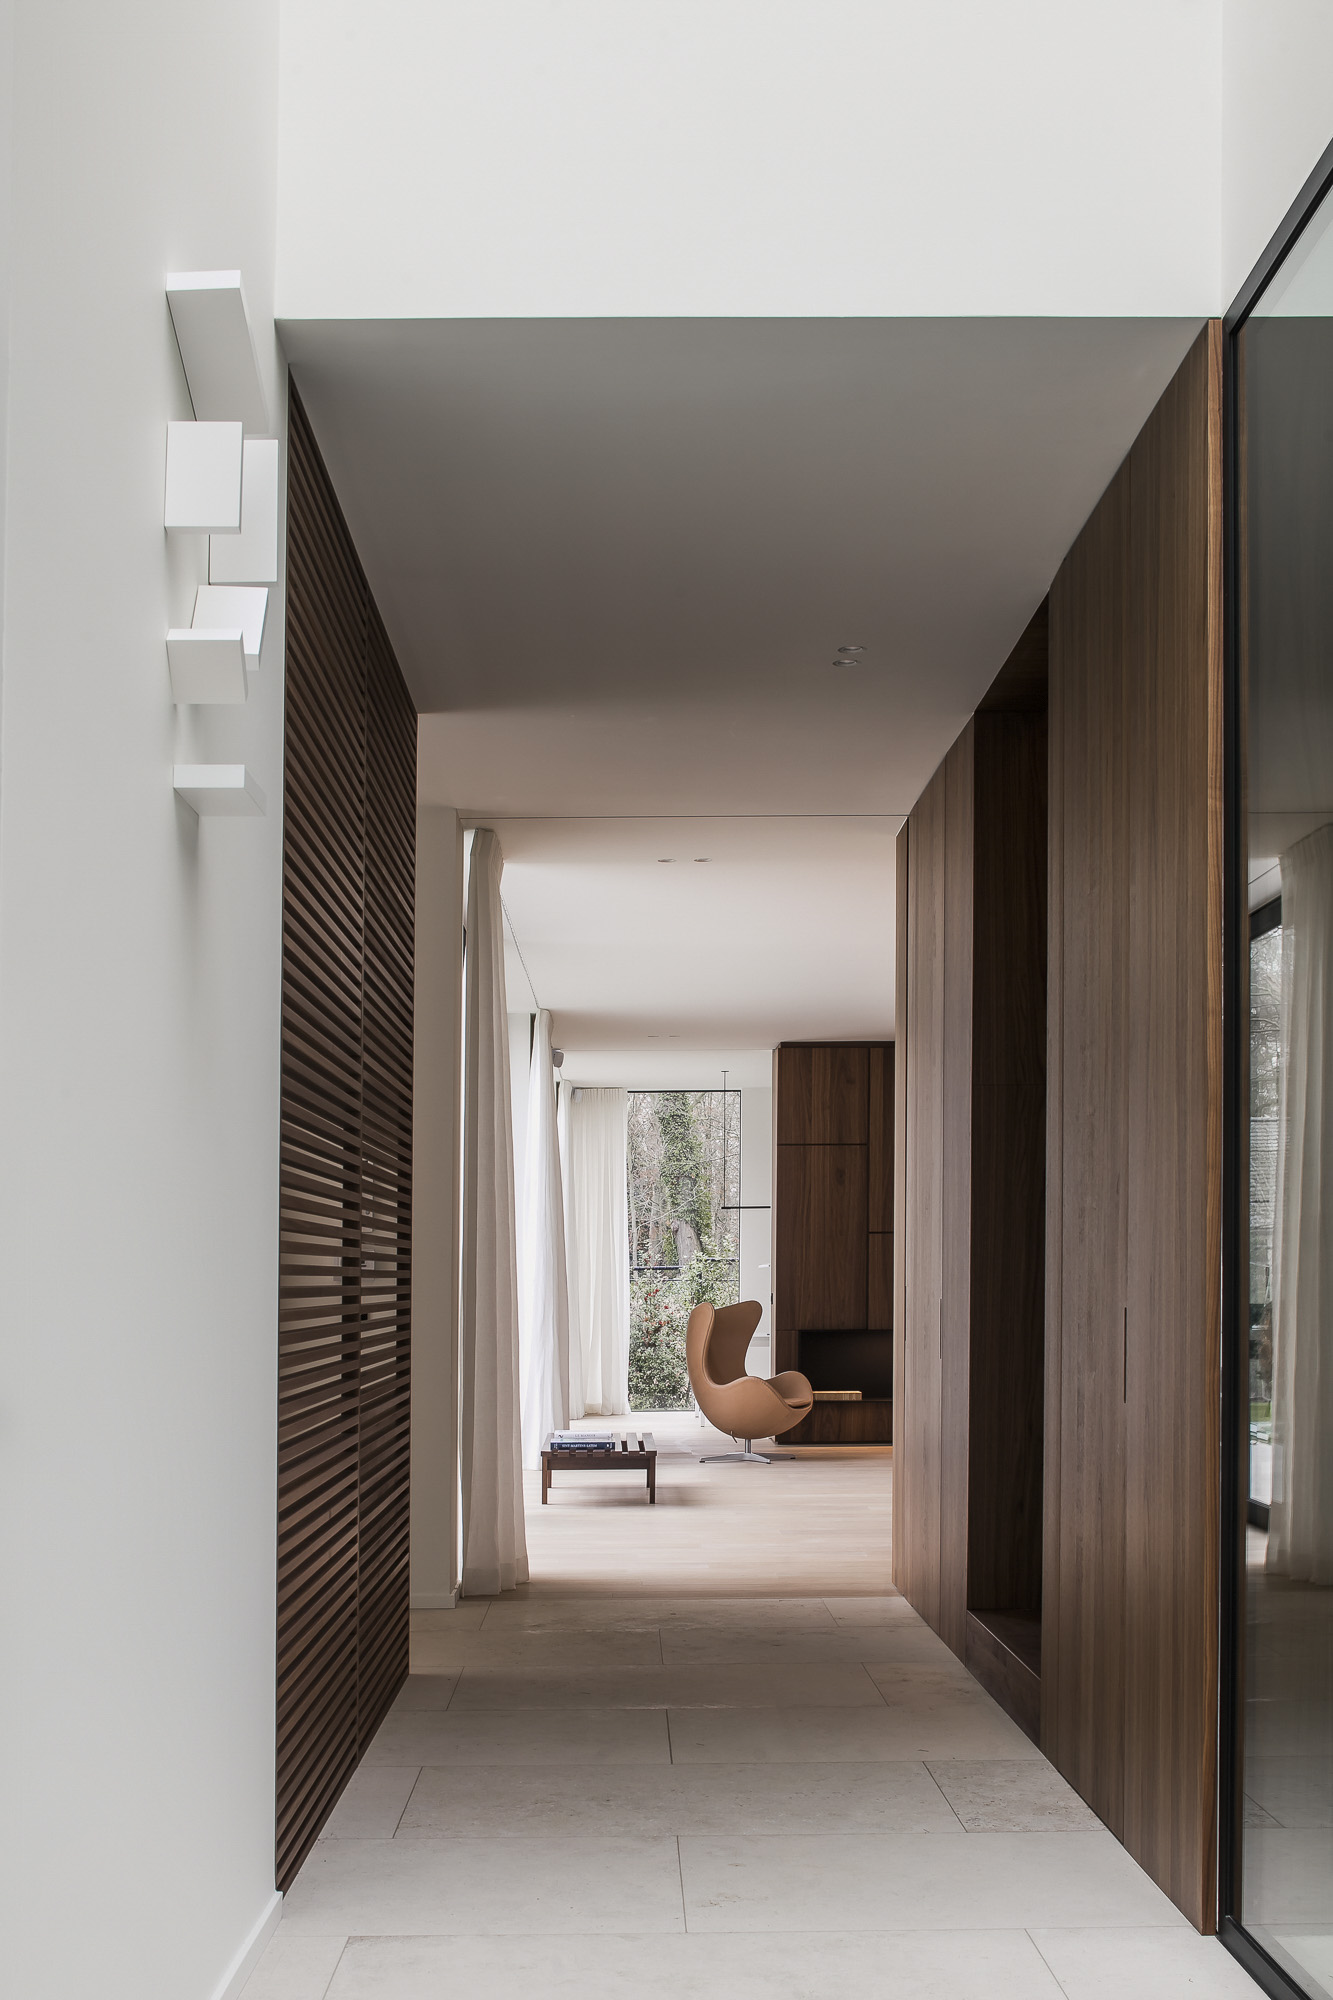 Een moderne binnenruimte met een unieke witte wandlamp, houten accenten, een groot raam en een bruine stoel. Het ontwerp is minimalistisch en verfijnd.